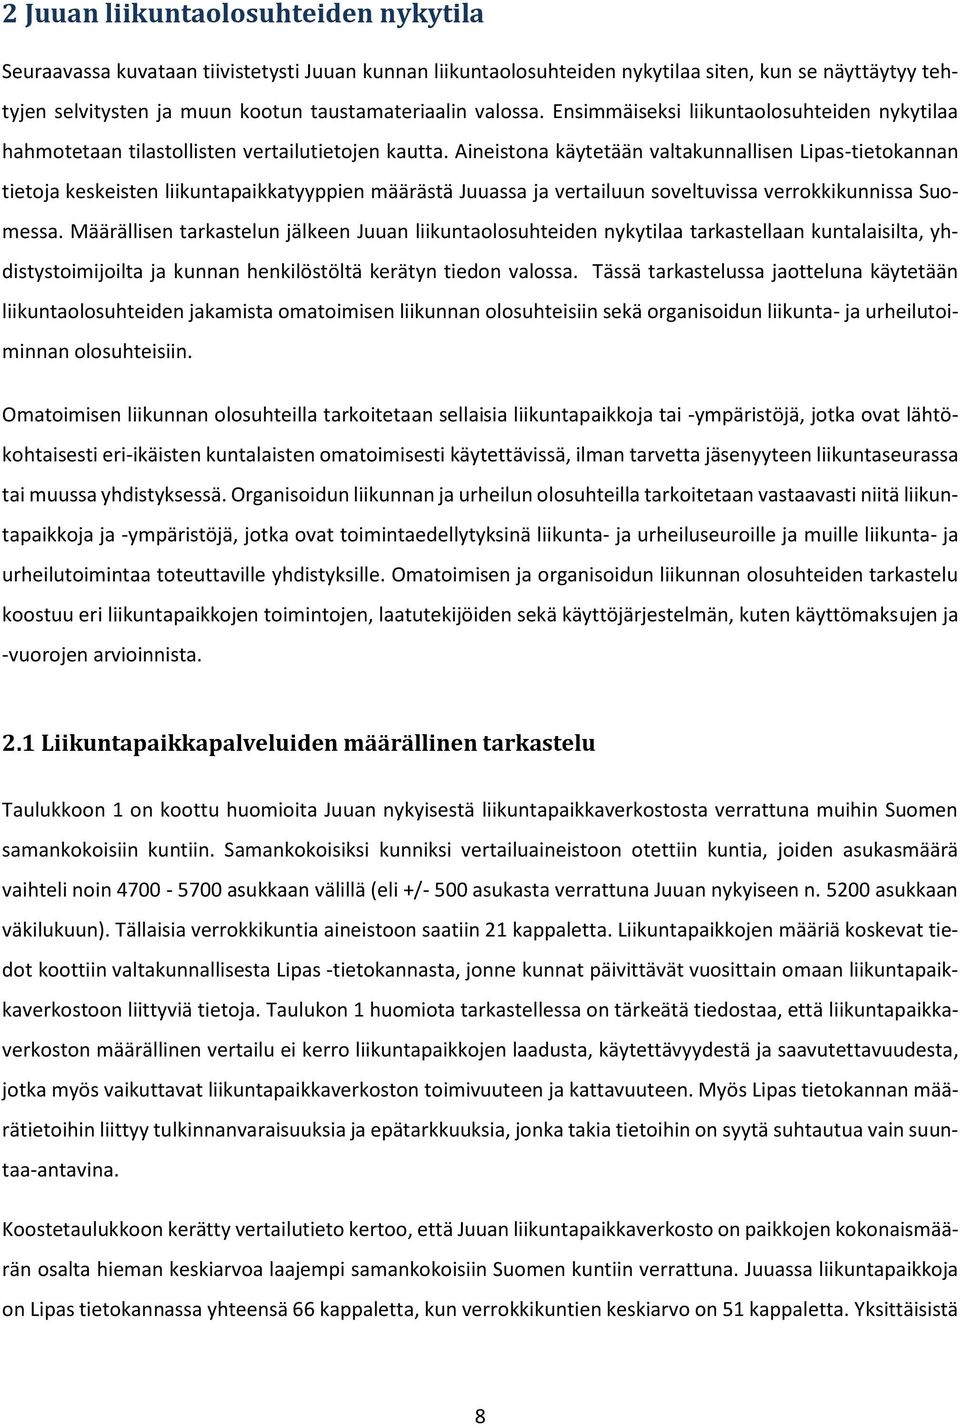 Aineistona käytetään valtakunnallisen Lipas-tietokannan tietoja keskeisten liikuntapaikkatyyppien määrästä Juuassa ja vertailuun soveltuvissa verrokkikunnissa Suomessa.